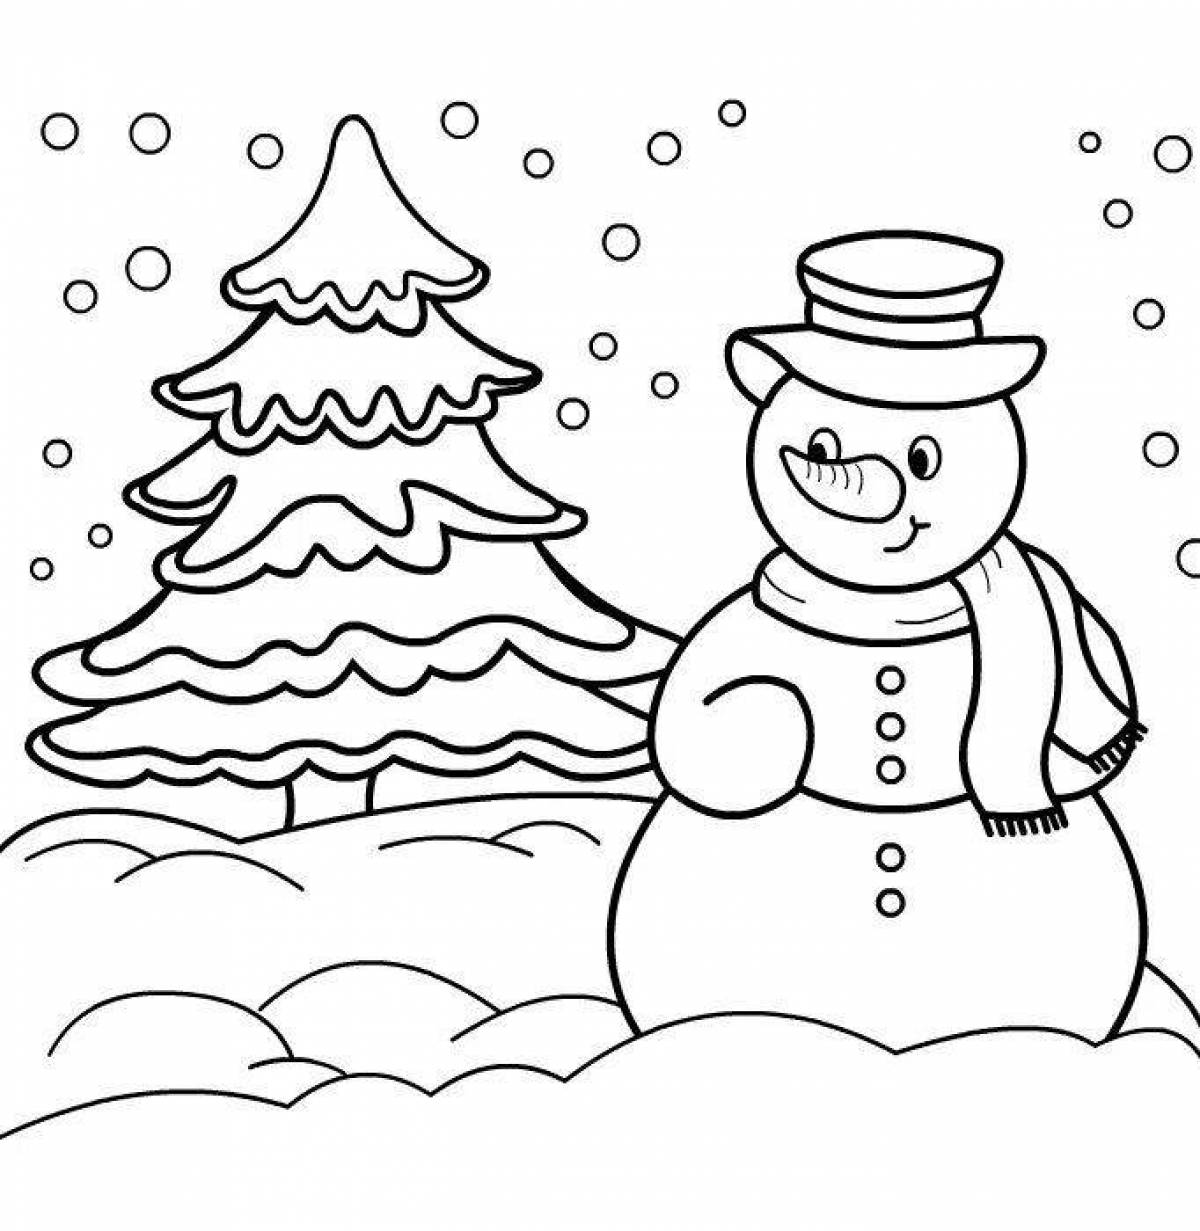 Раскраски снеговики. Зимние новогодние раскраски снеговиков скачать